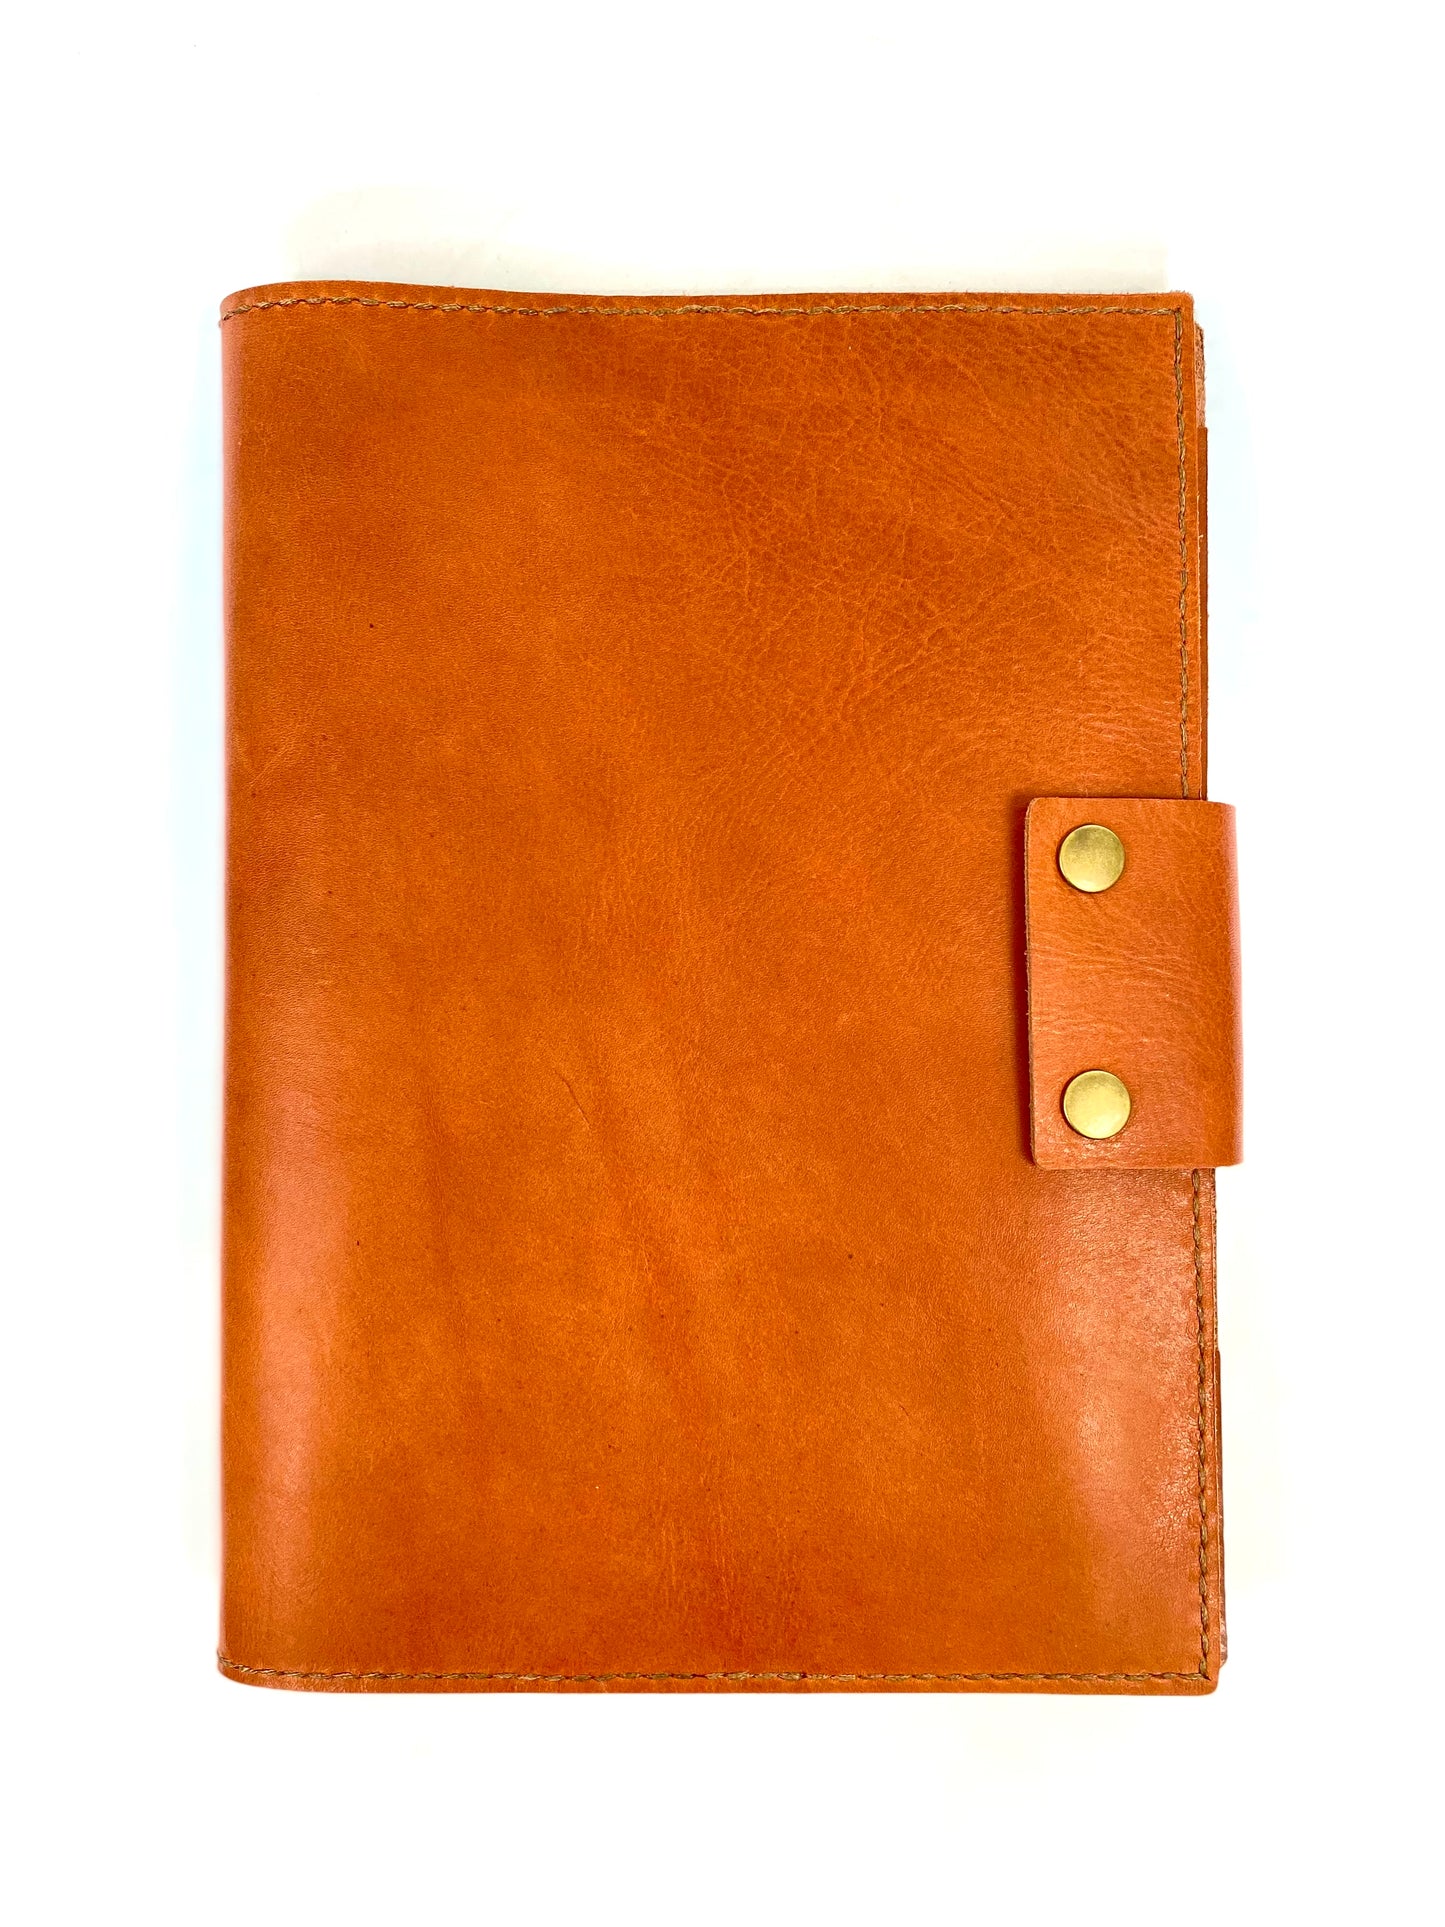 Sanna Leather Contemporary A4 Portfolio cover